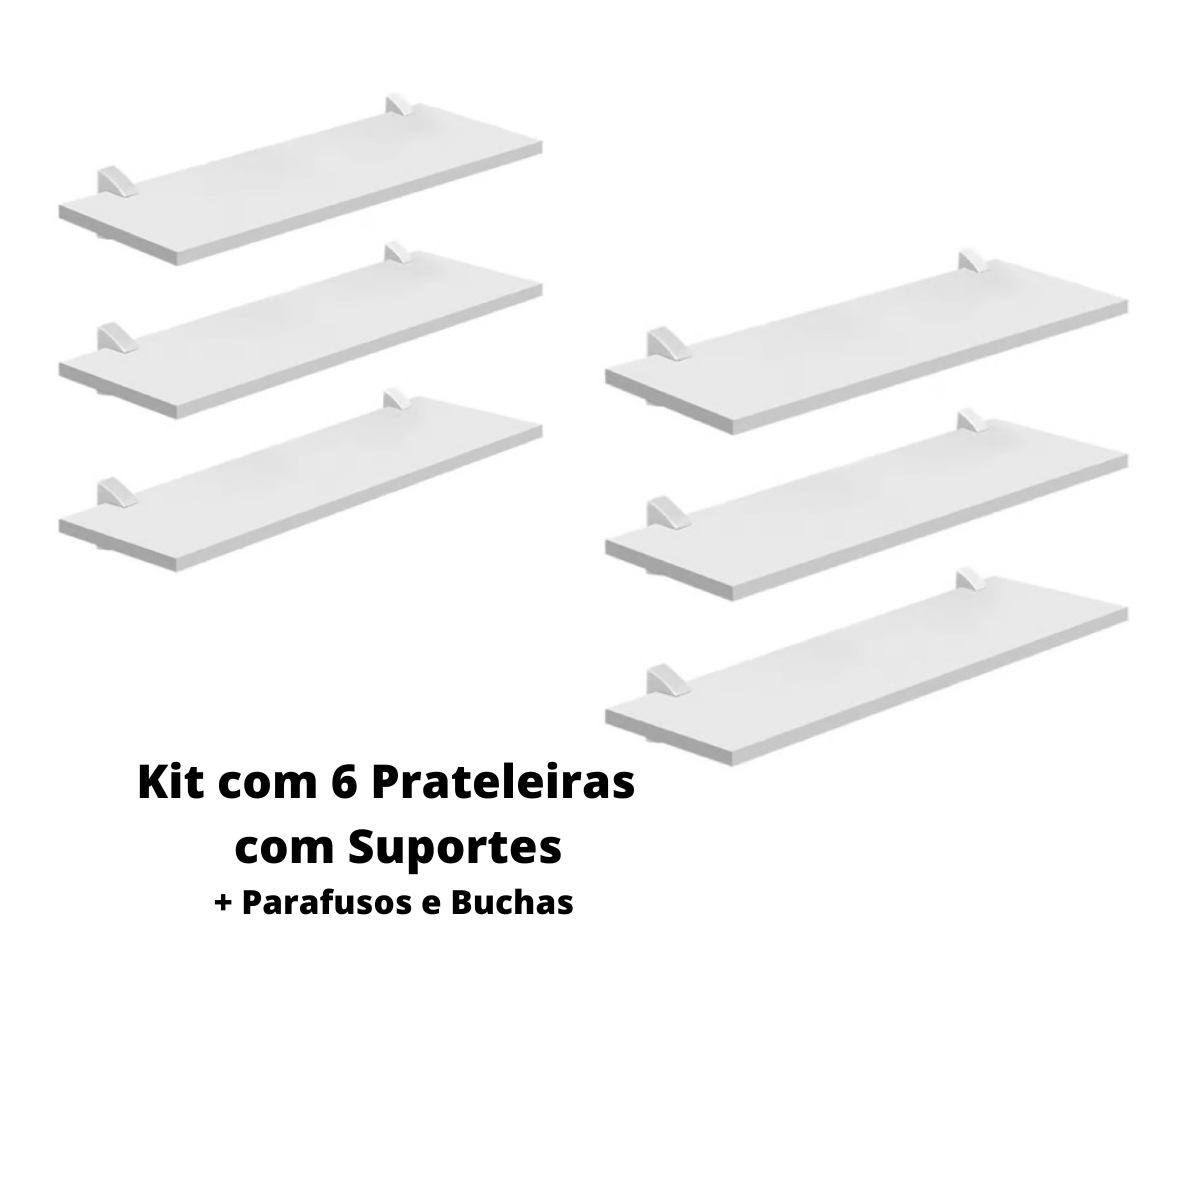 Kit com 6 Prateleiras Mdp Bcas 20x40 com Suportes D-core